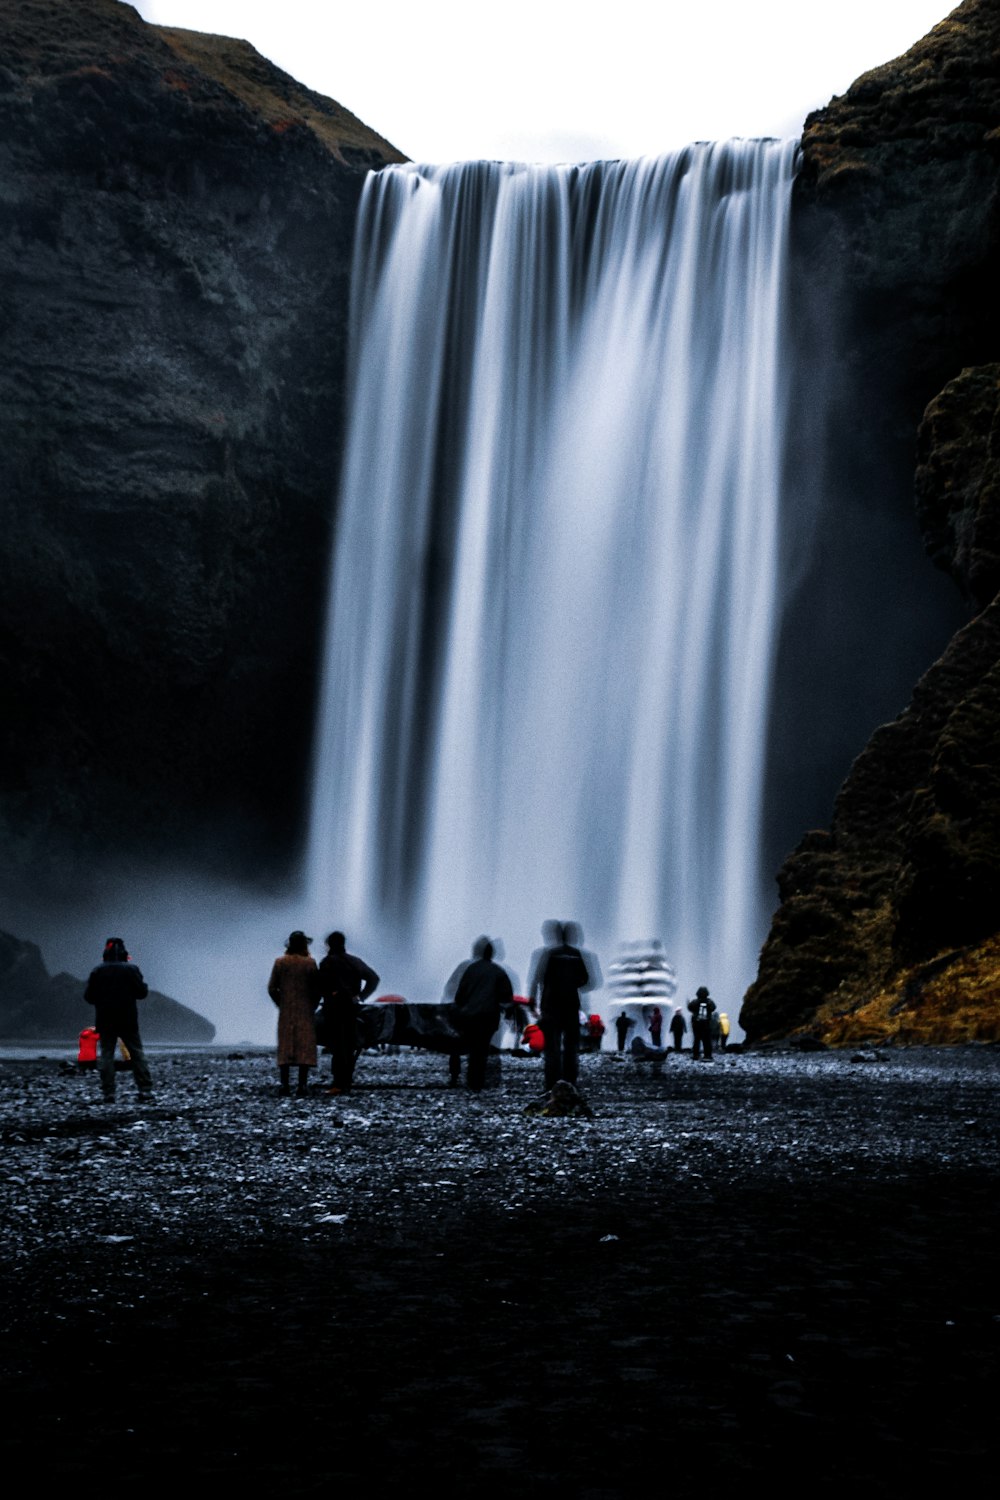 persone in piedi vicino alle cascate durante il giorno